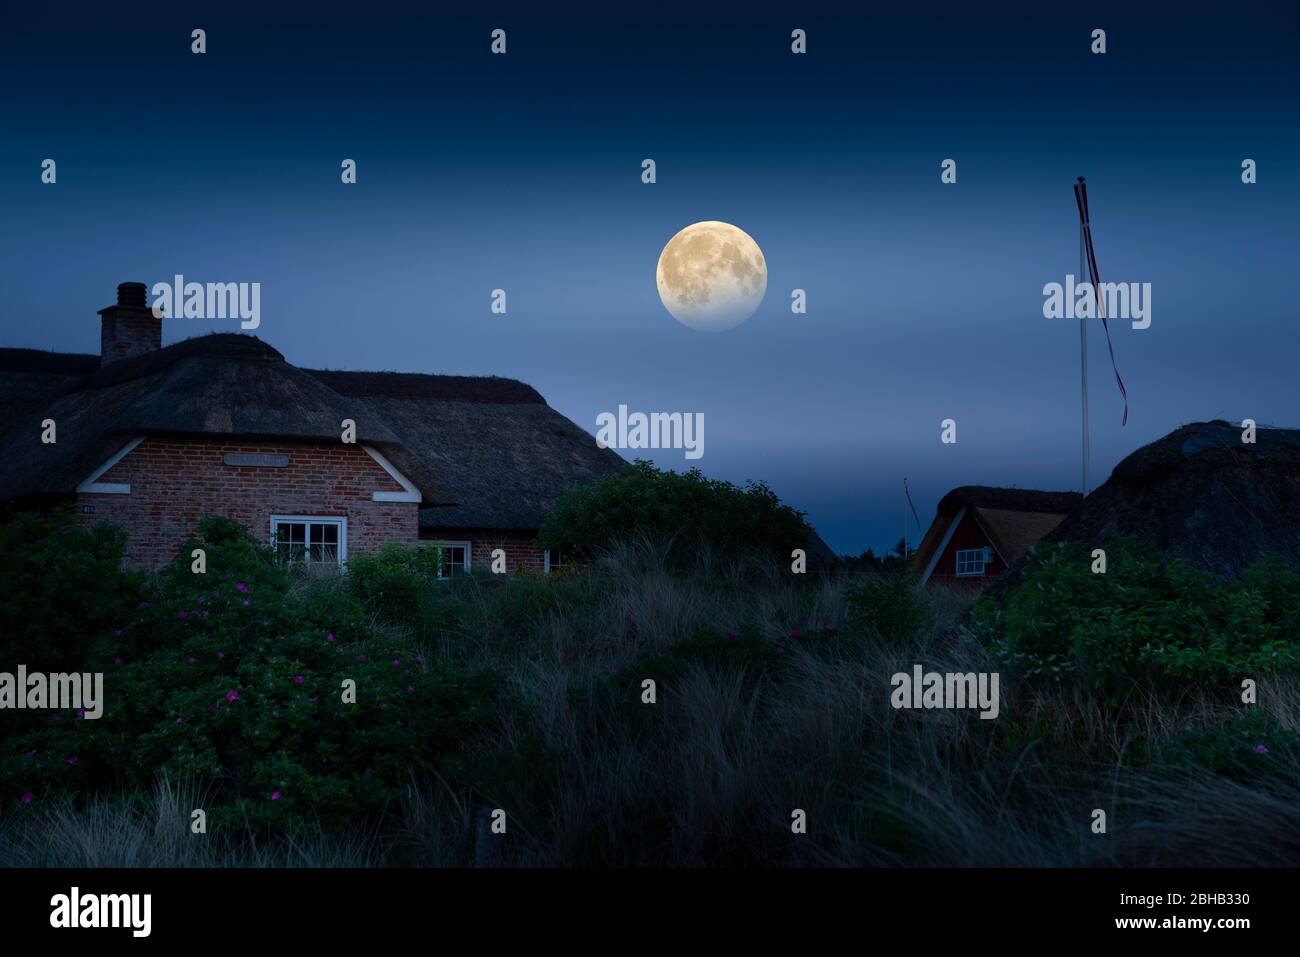 Denmark, Jutland, Ringkobing Fjord, cottages in the moonlight. Stock Photo